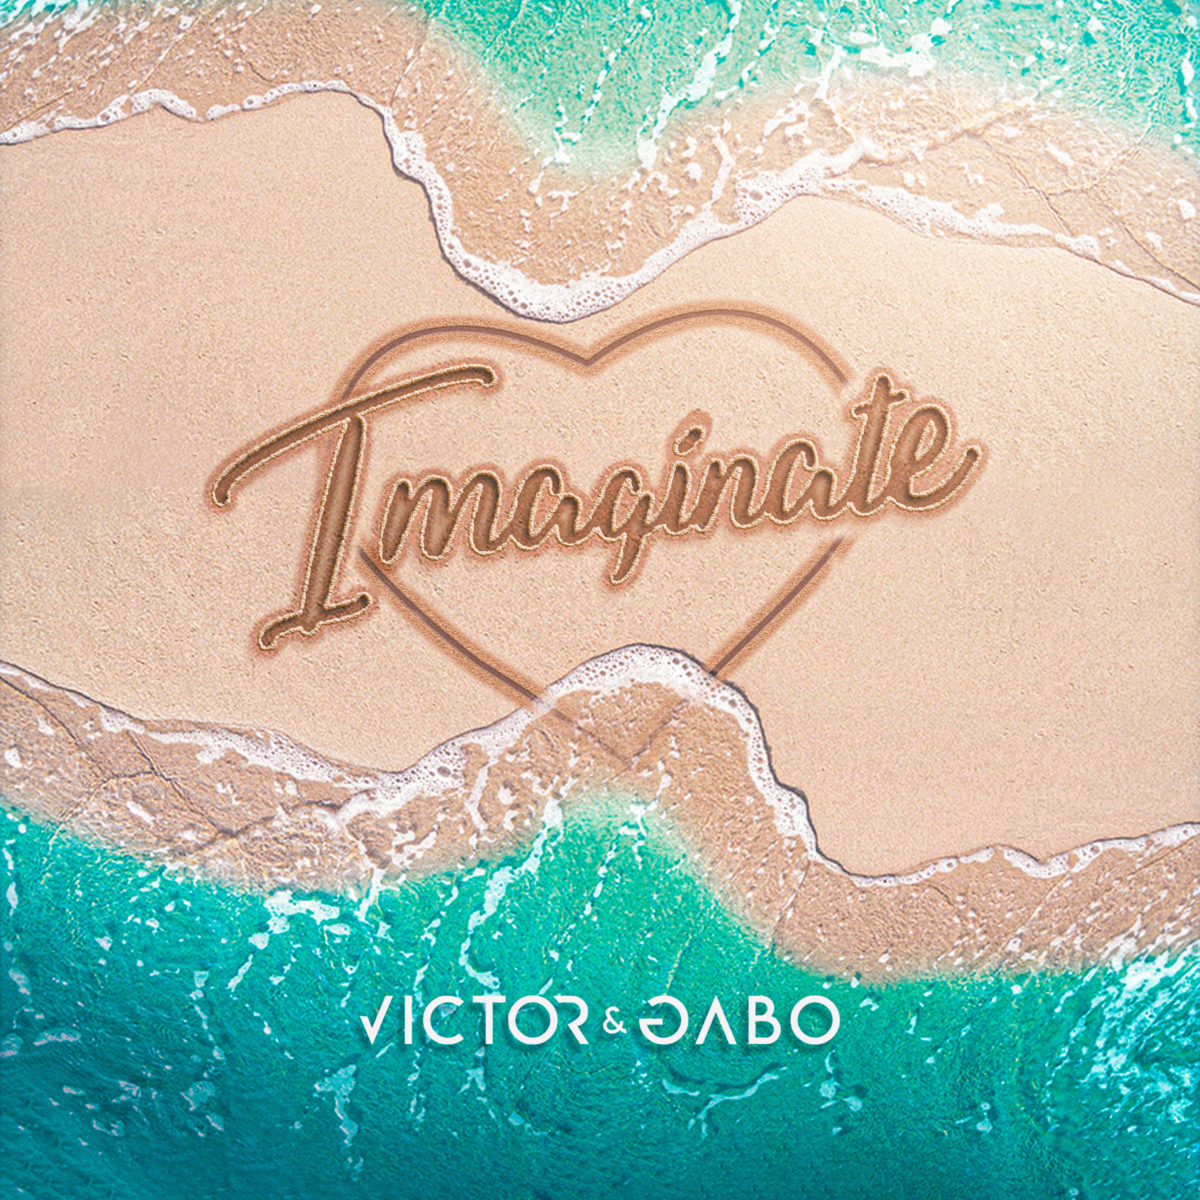 “Imagínate” lo nuevo de Víctor & Gabo